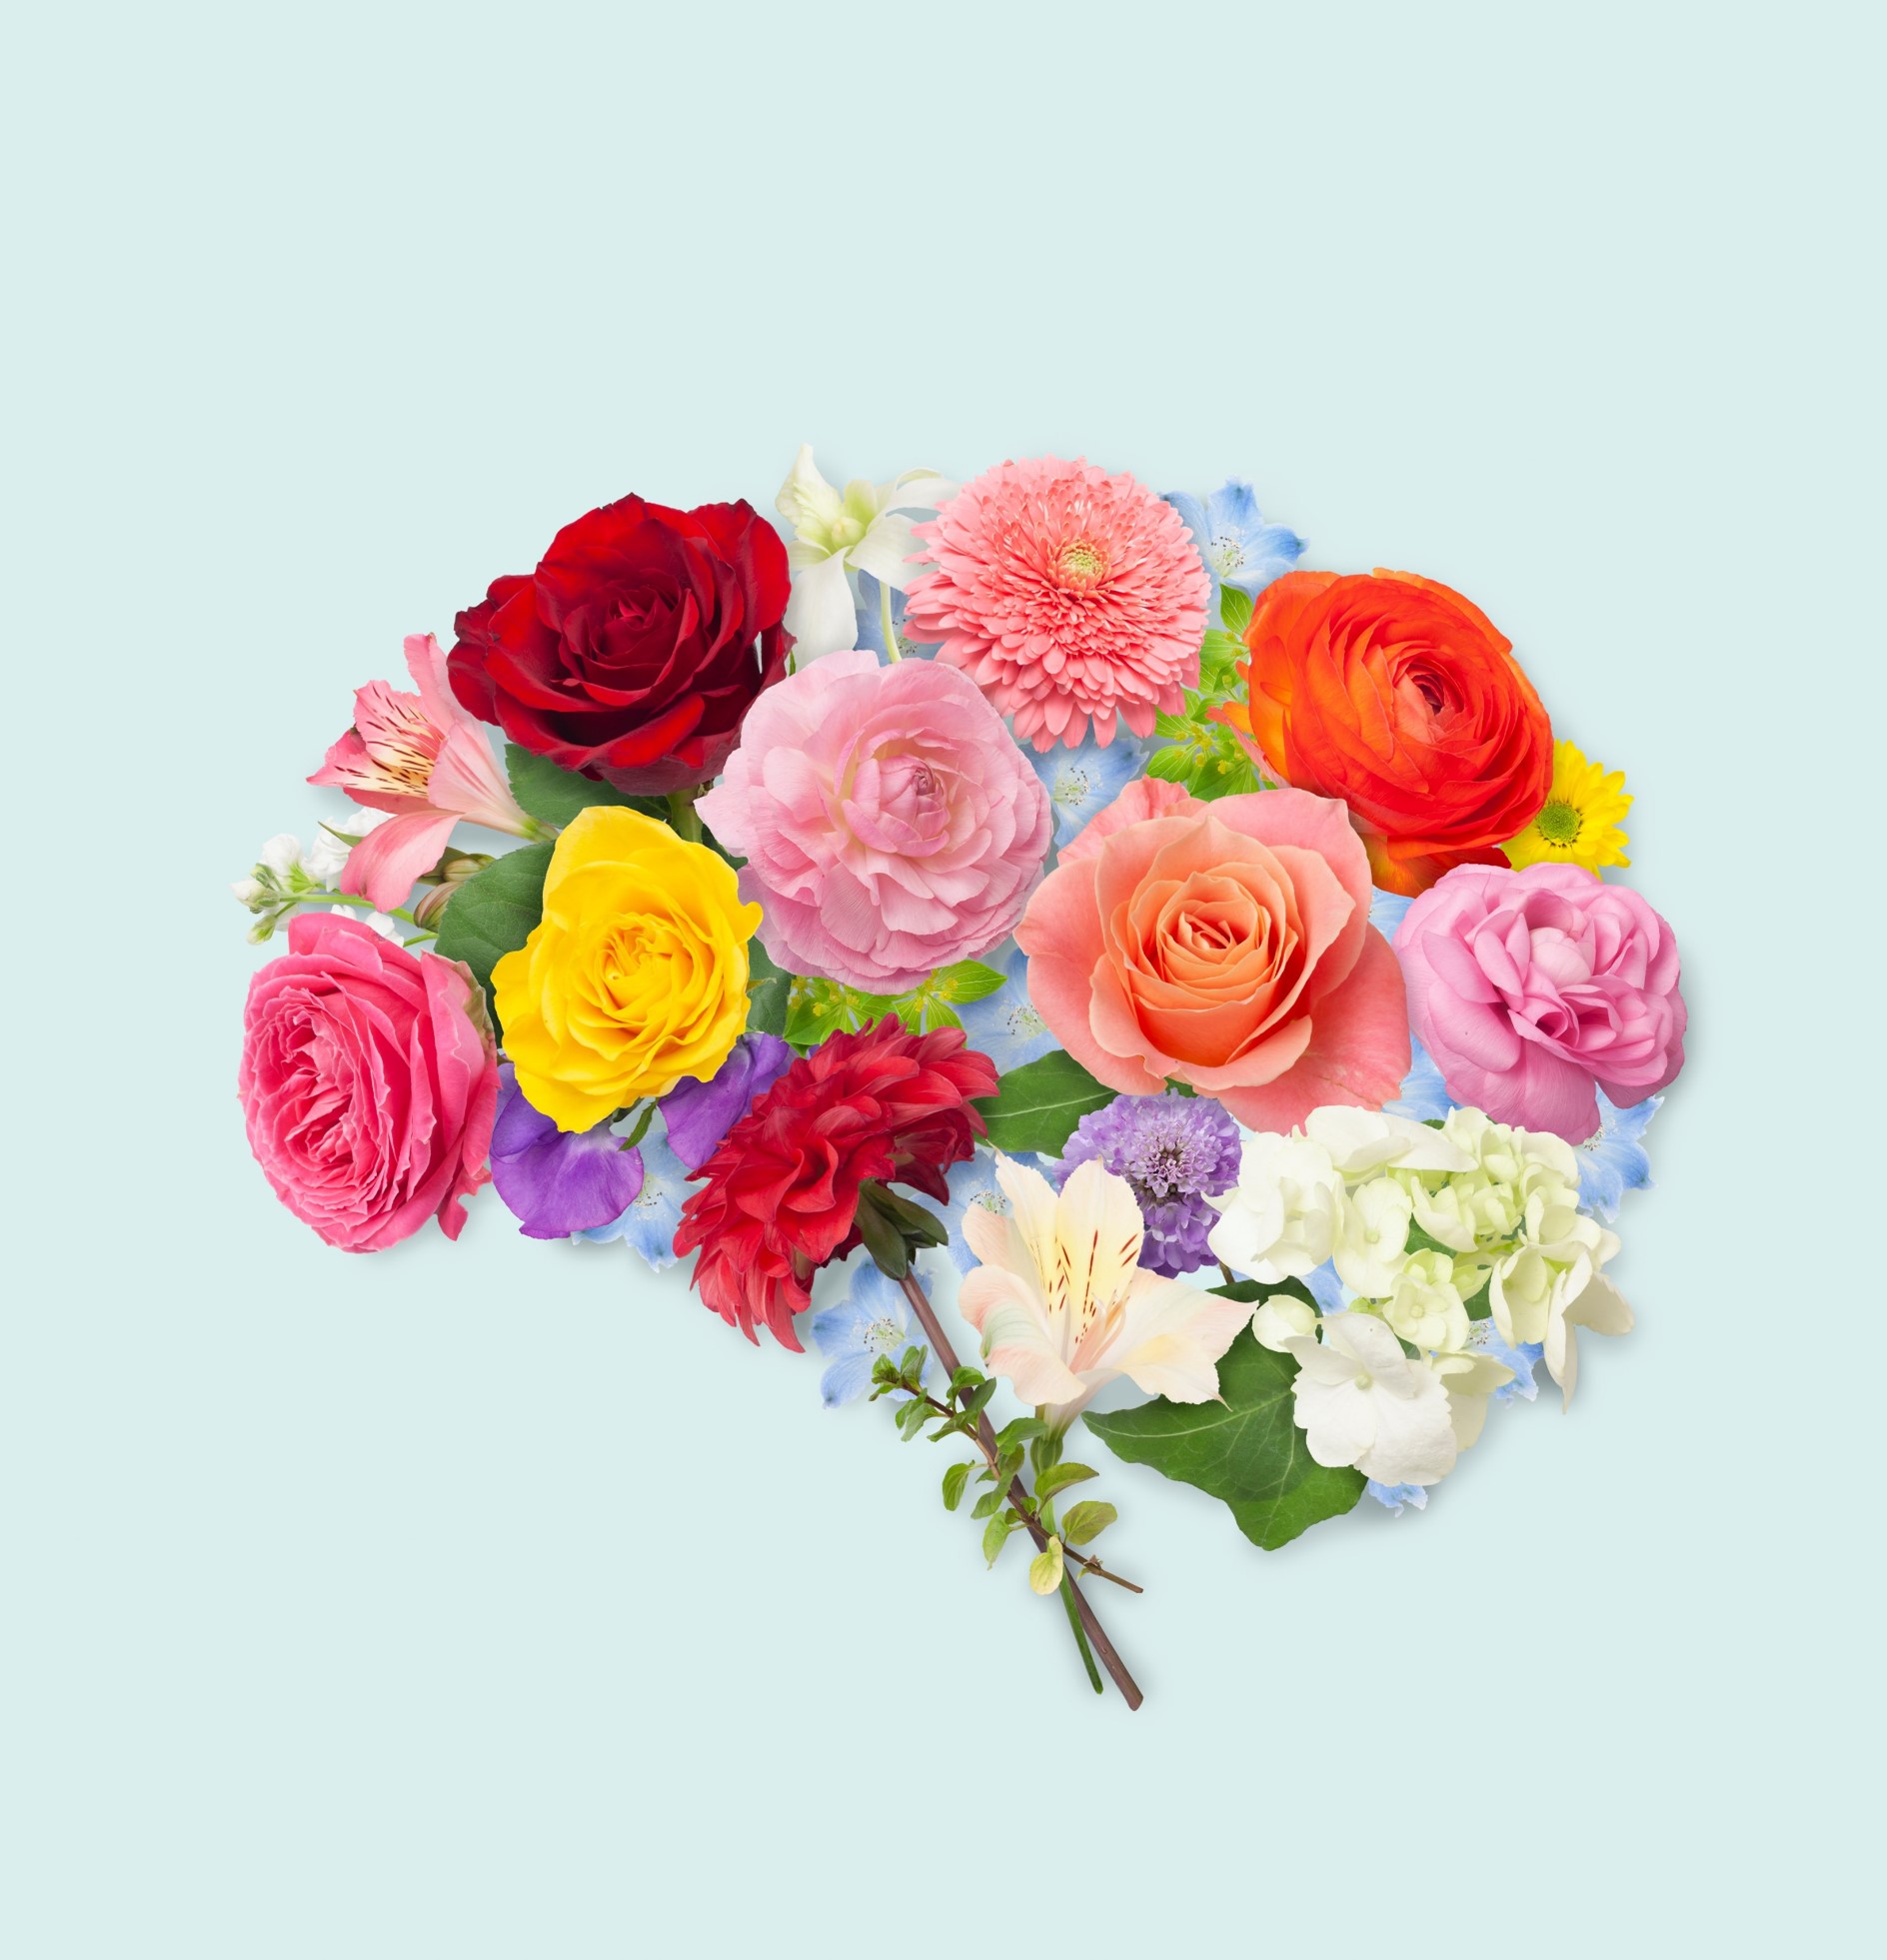 En bukett av färgglada rosor i form av en hjärna